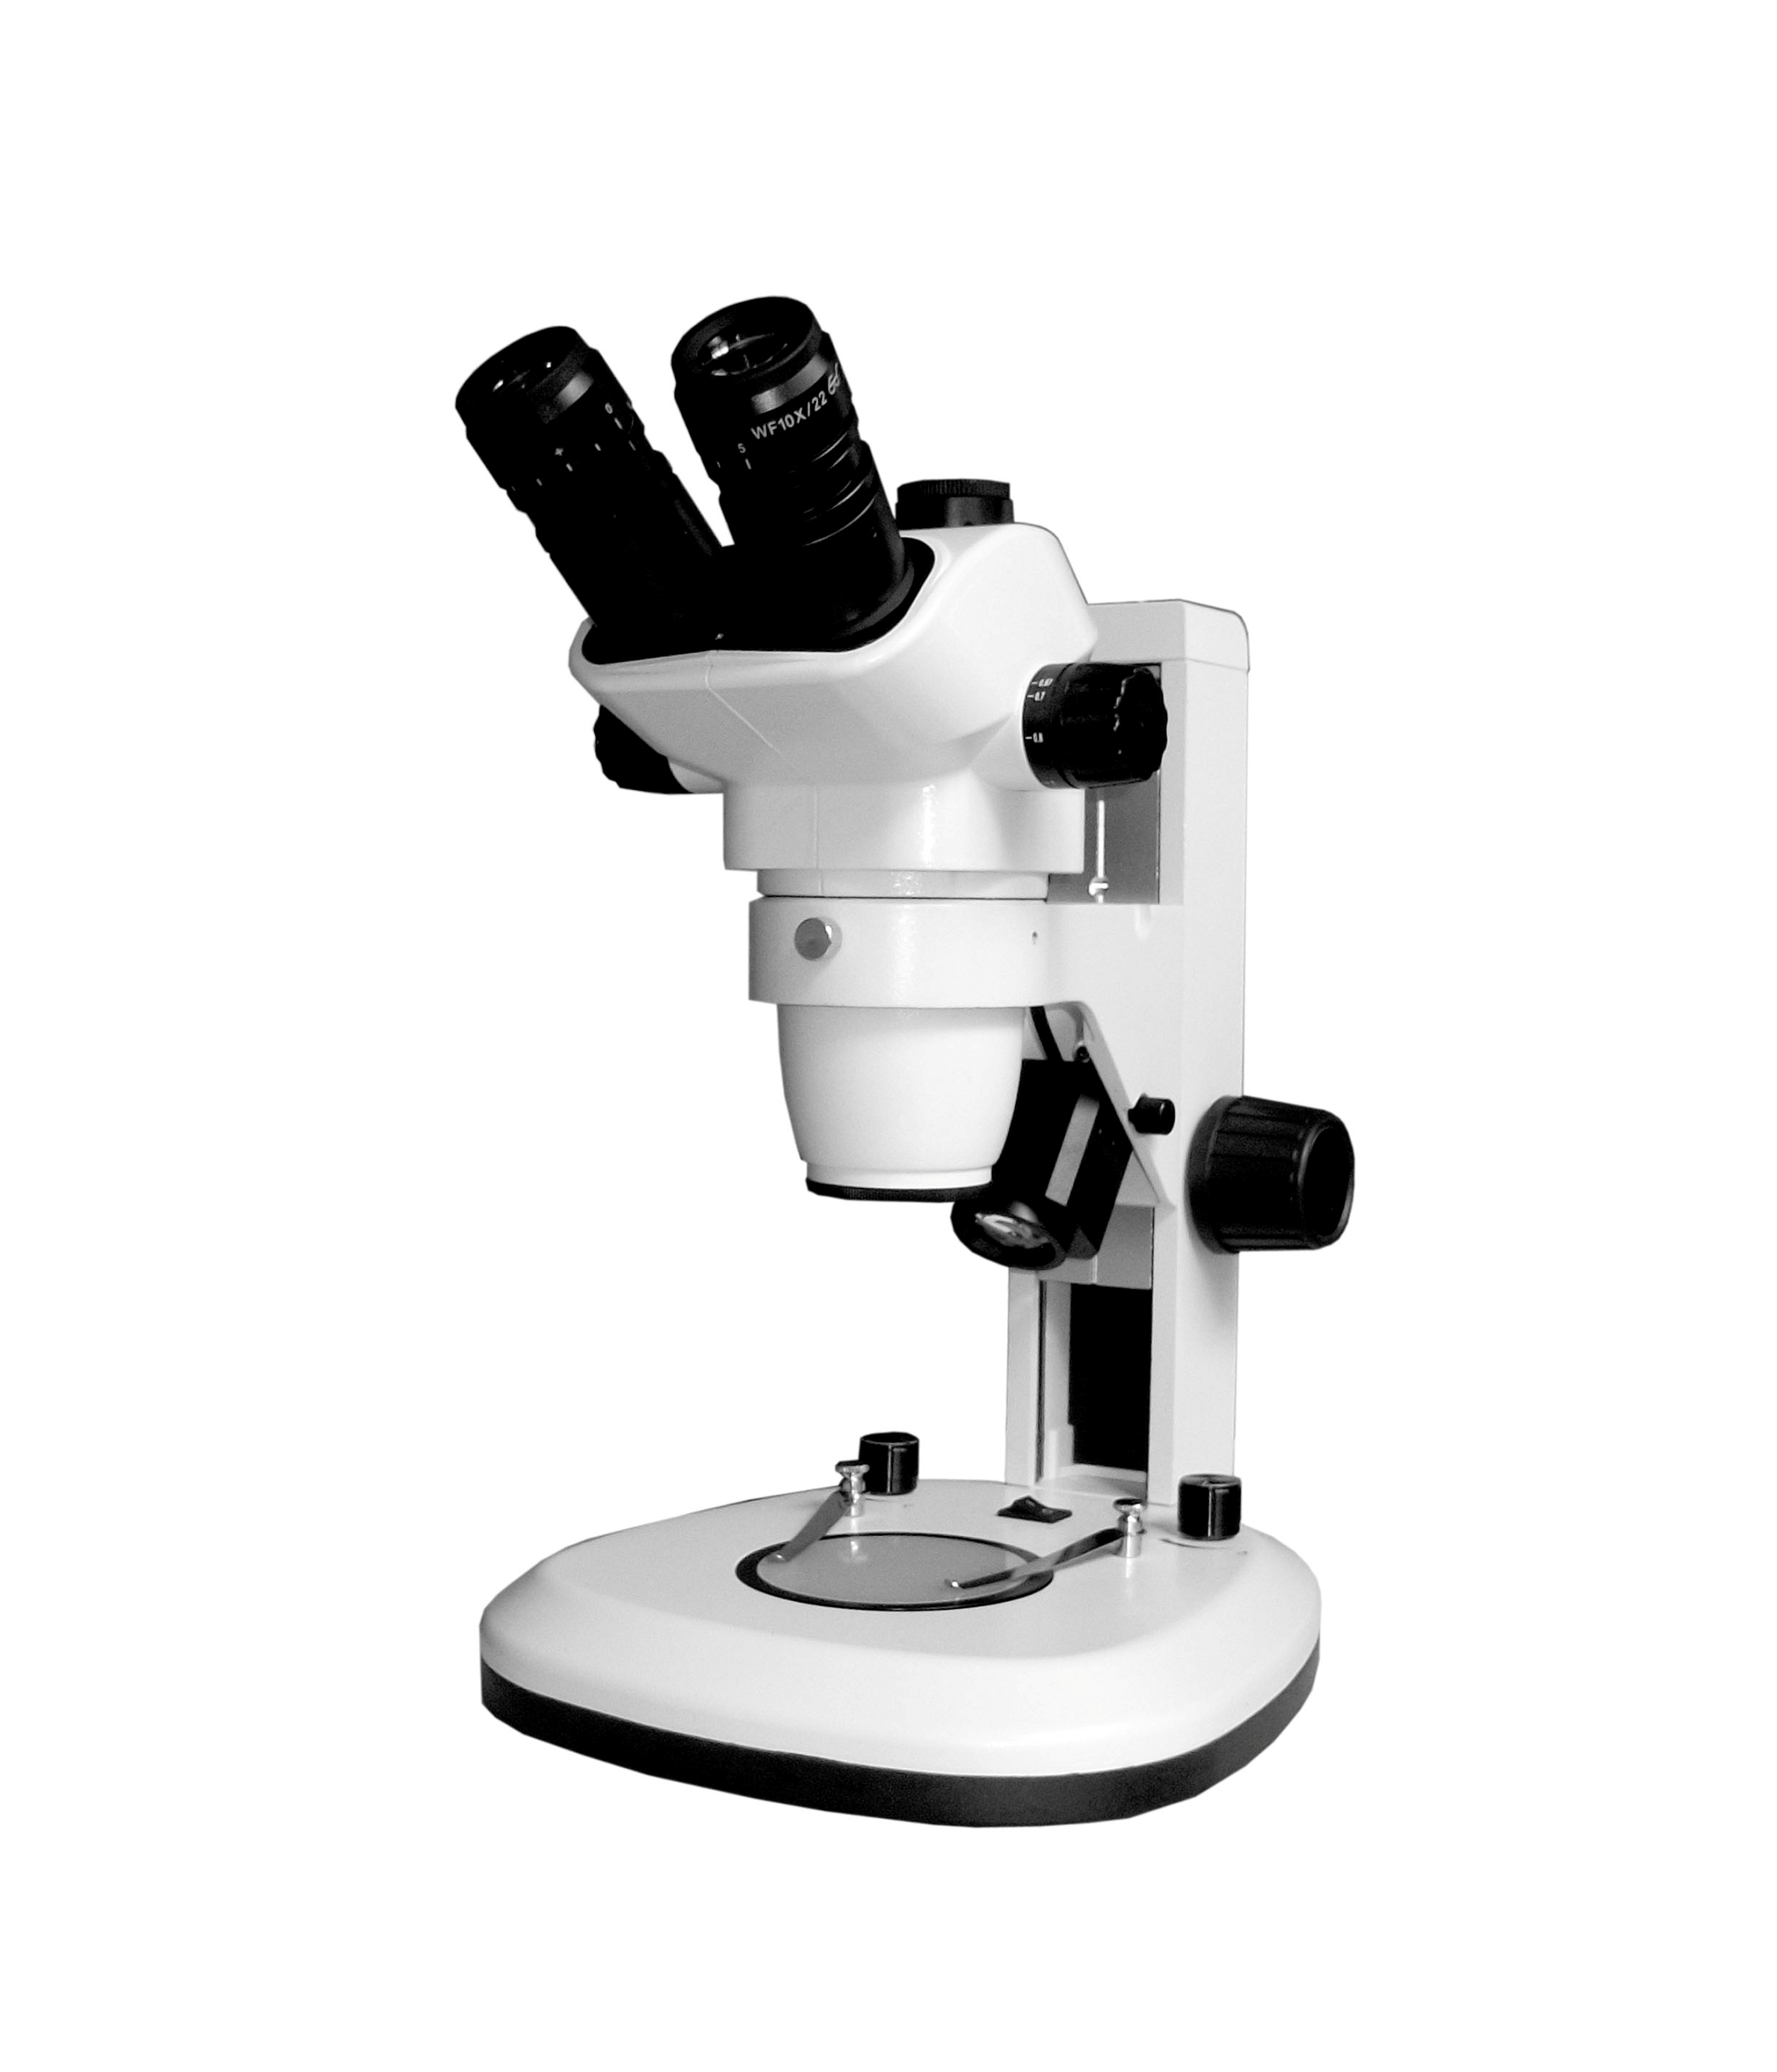 重庆显微镜价格_重庆显微镜,重光显微镜,成都显微镜,COIC显微镜,显微相机报价_重庆留辉科技有限公司